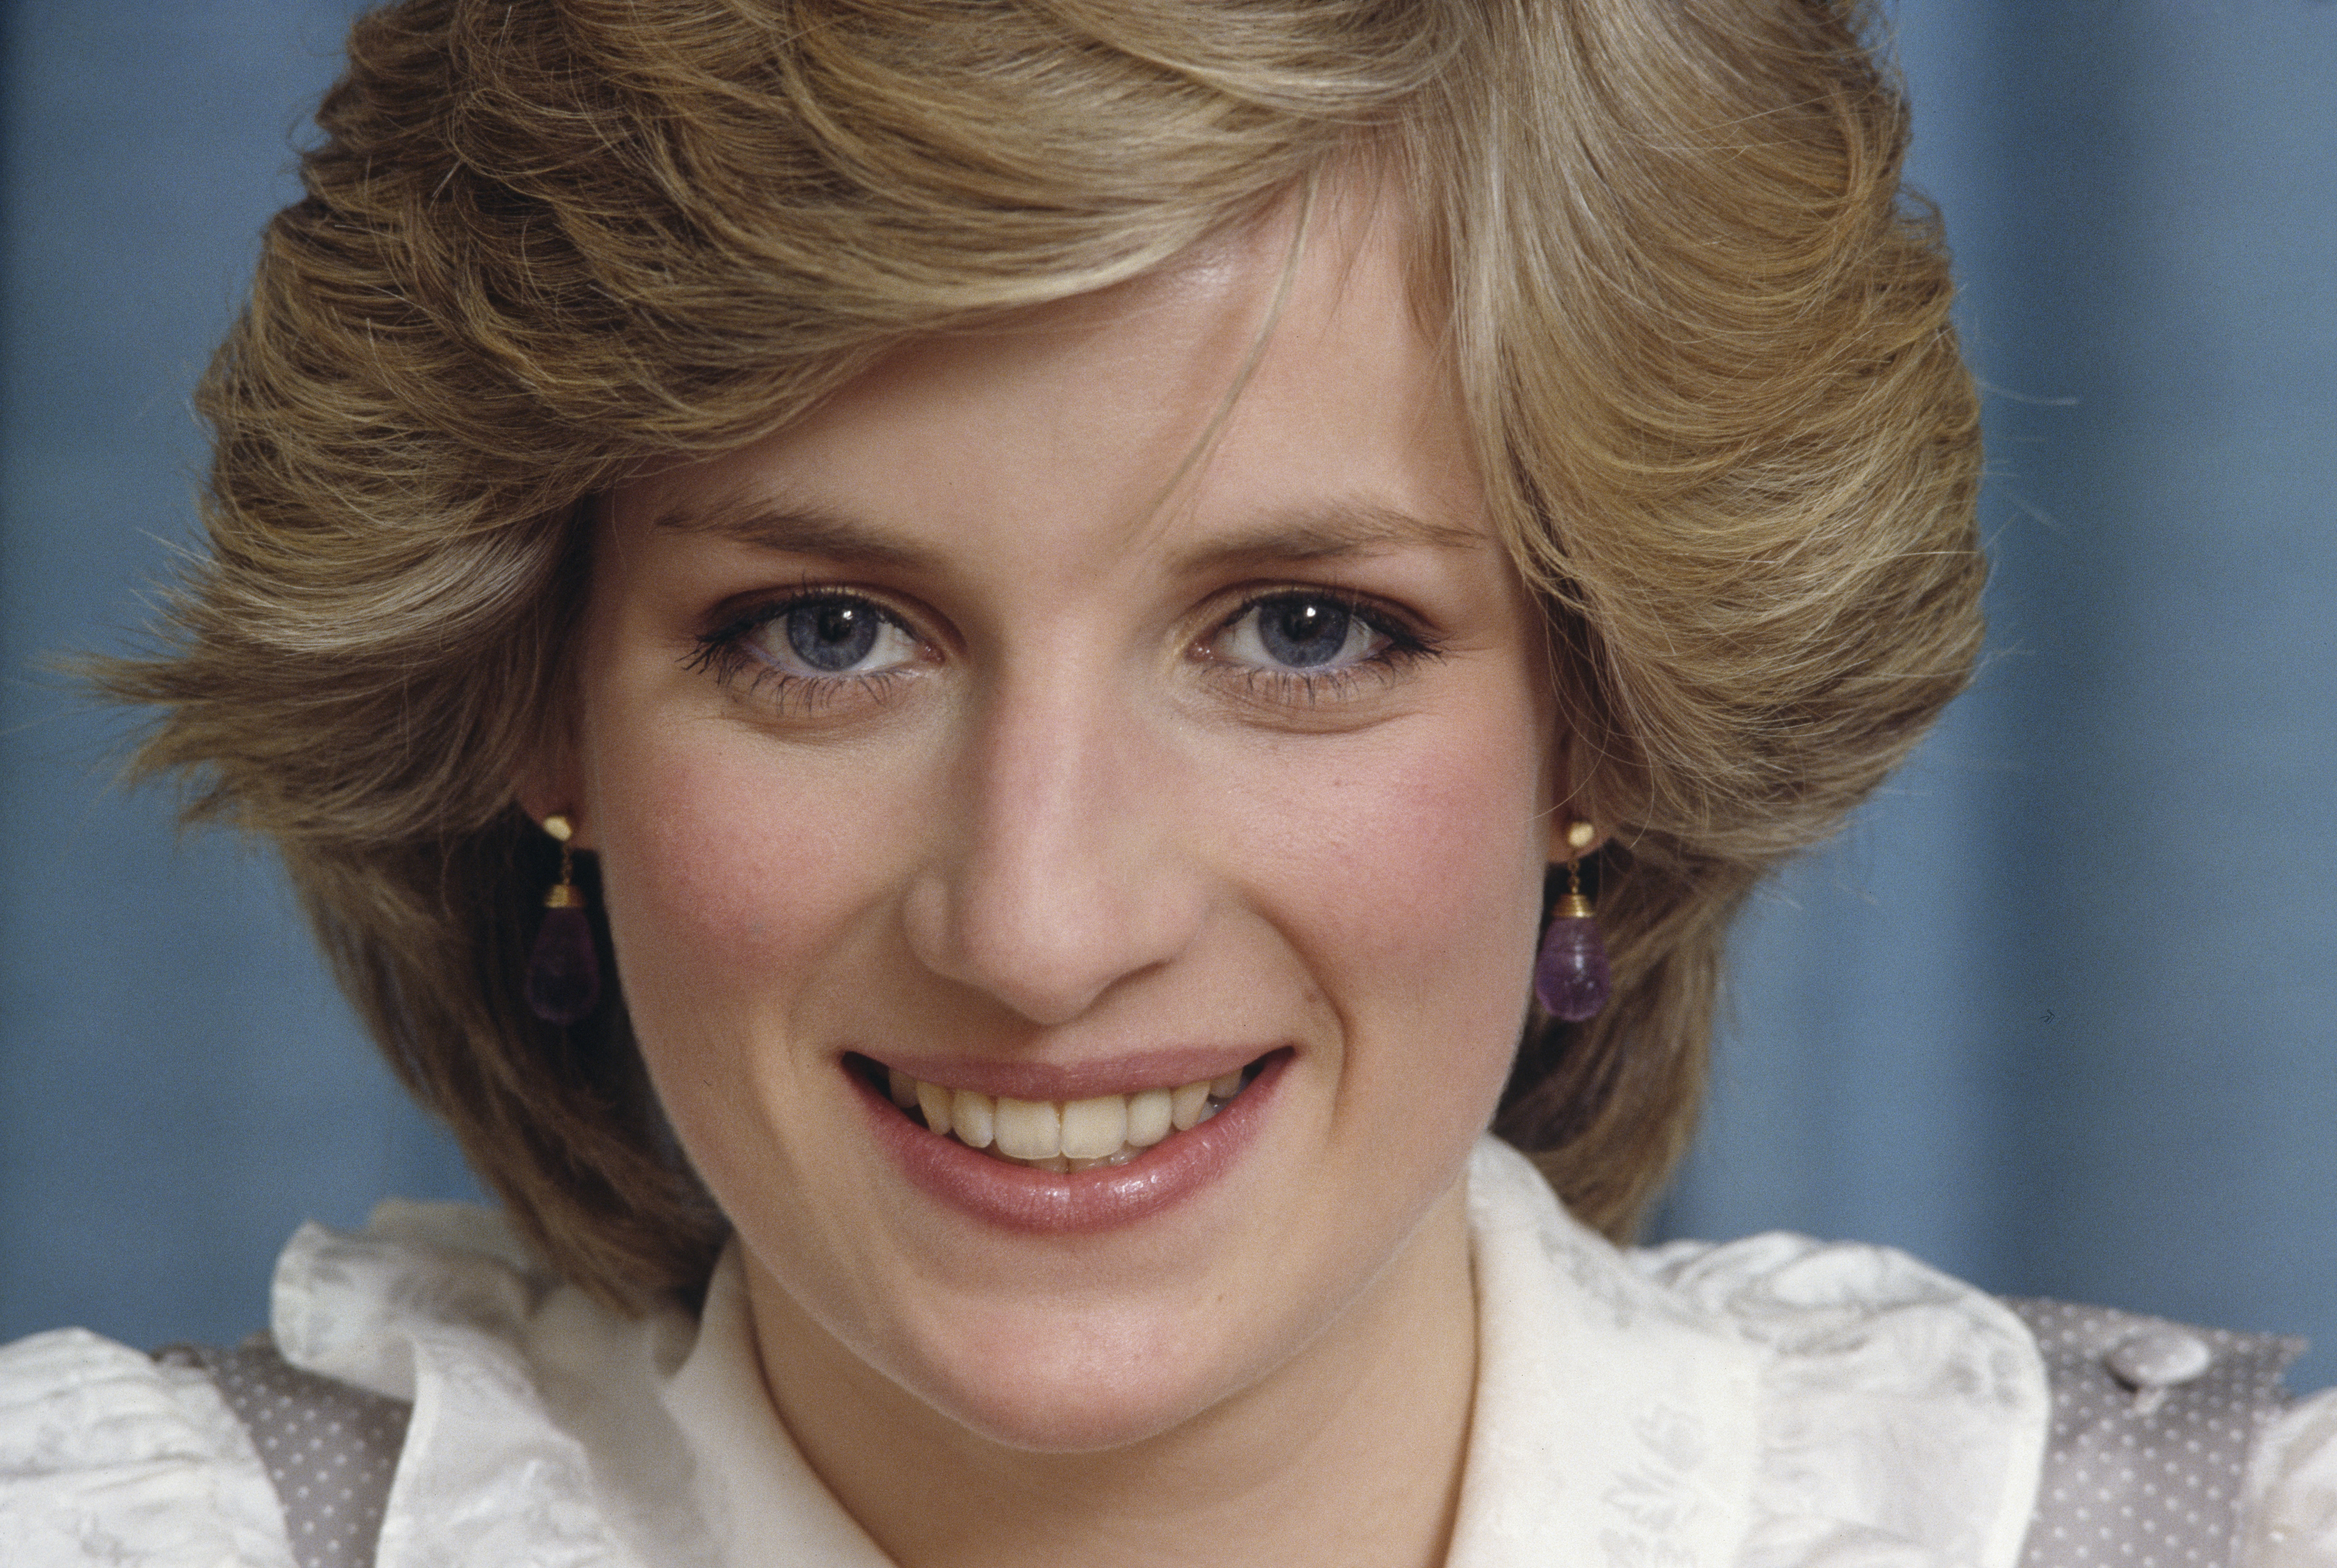 La princesse Diana photographiée chez elle en février 1983 au palais de Kensington, à Londres. | Source : Getty Images